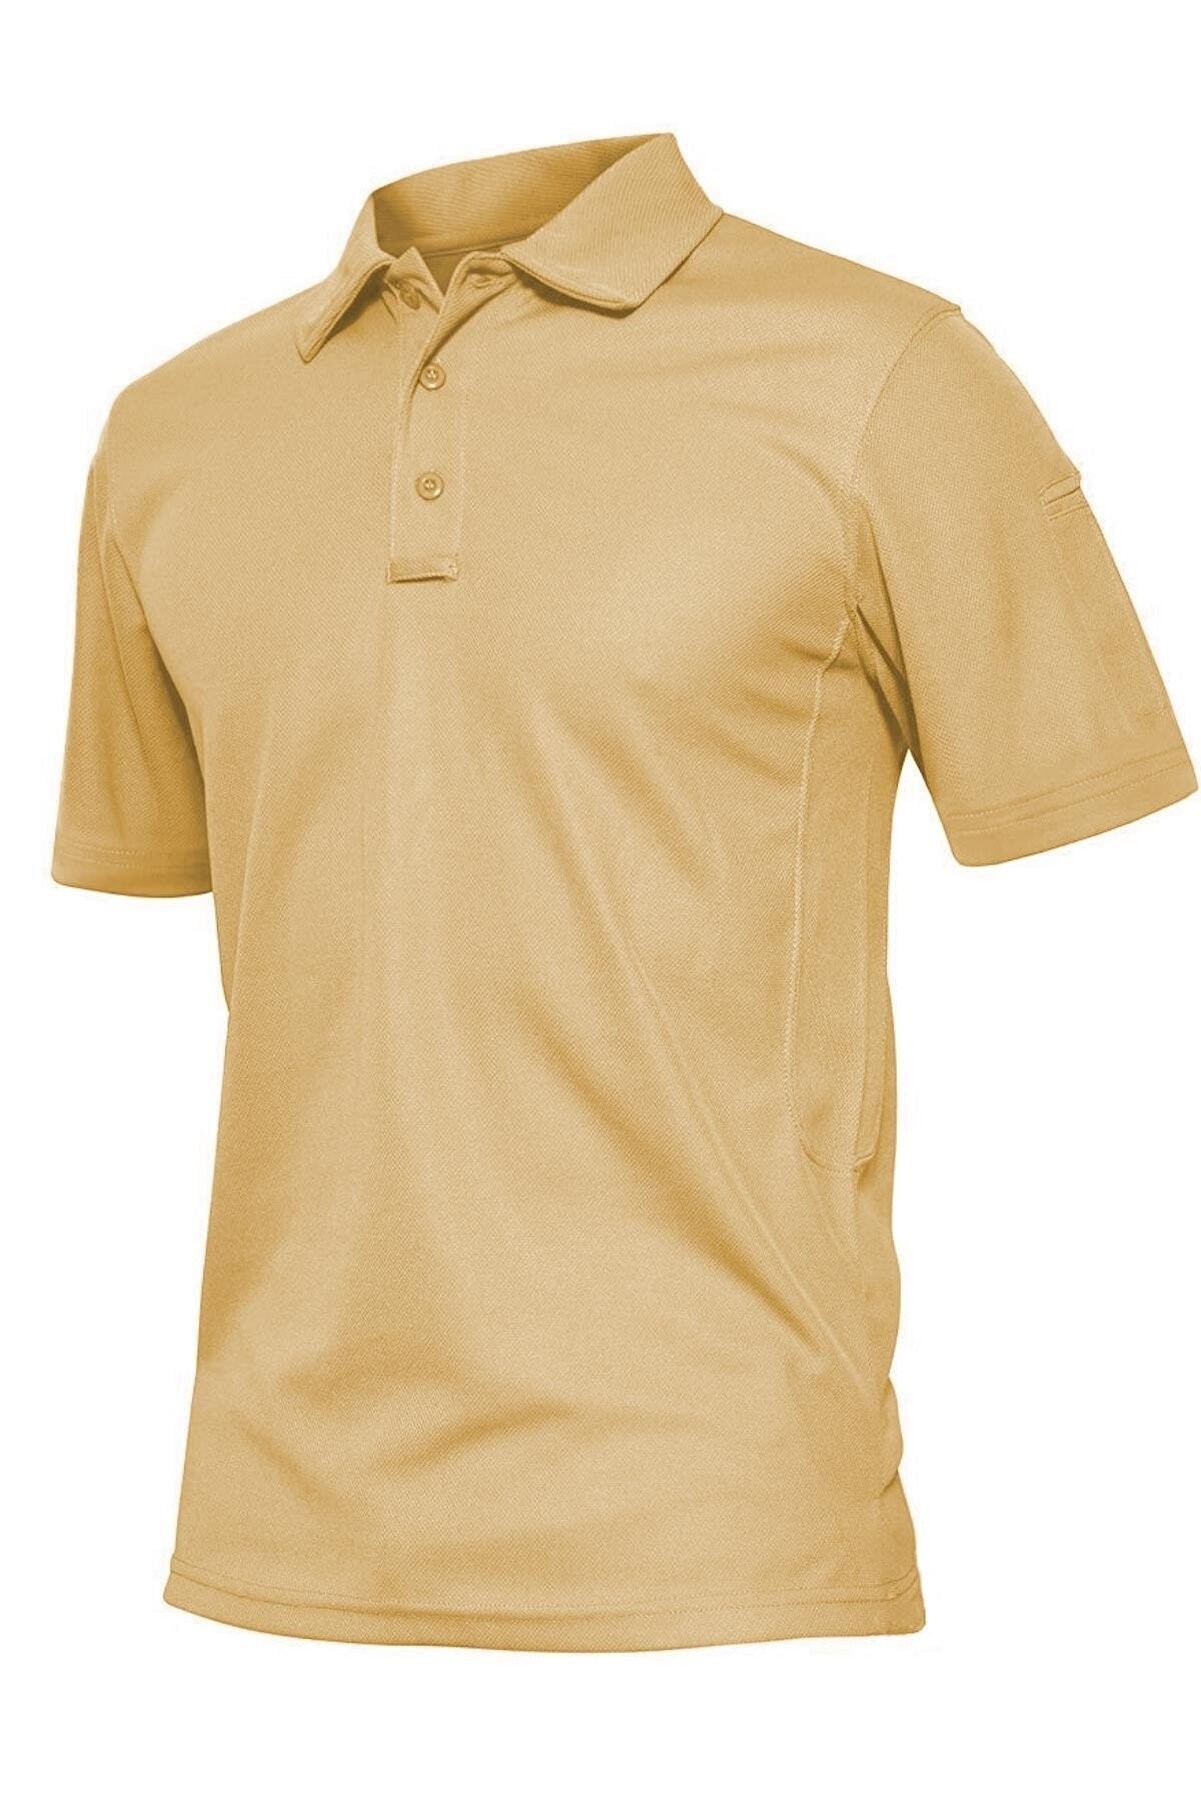 Ghassy Co. Erkek Taktik Polo Yaka Gömlek Hızlı Kuruma Nem Emici Performans Pique Jersey Golf T-shirt - BEJ